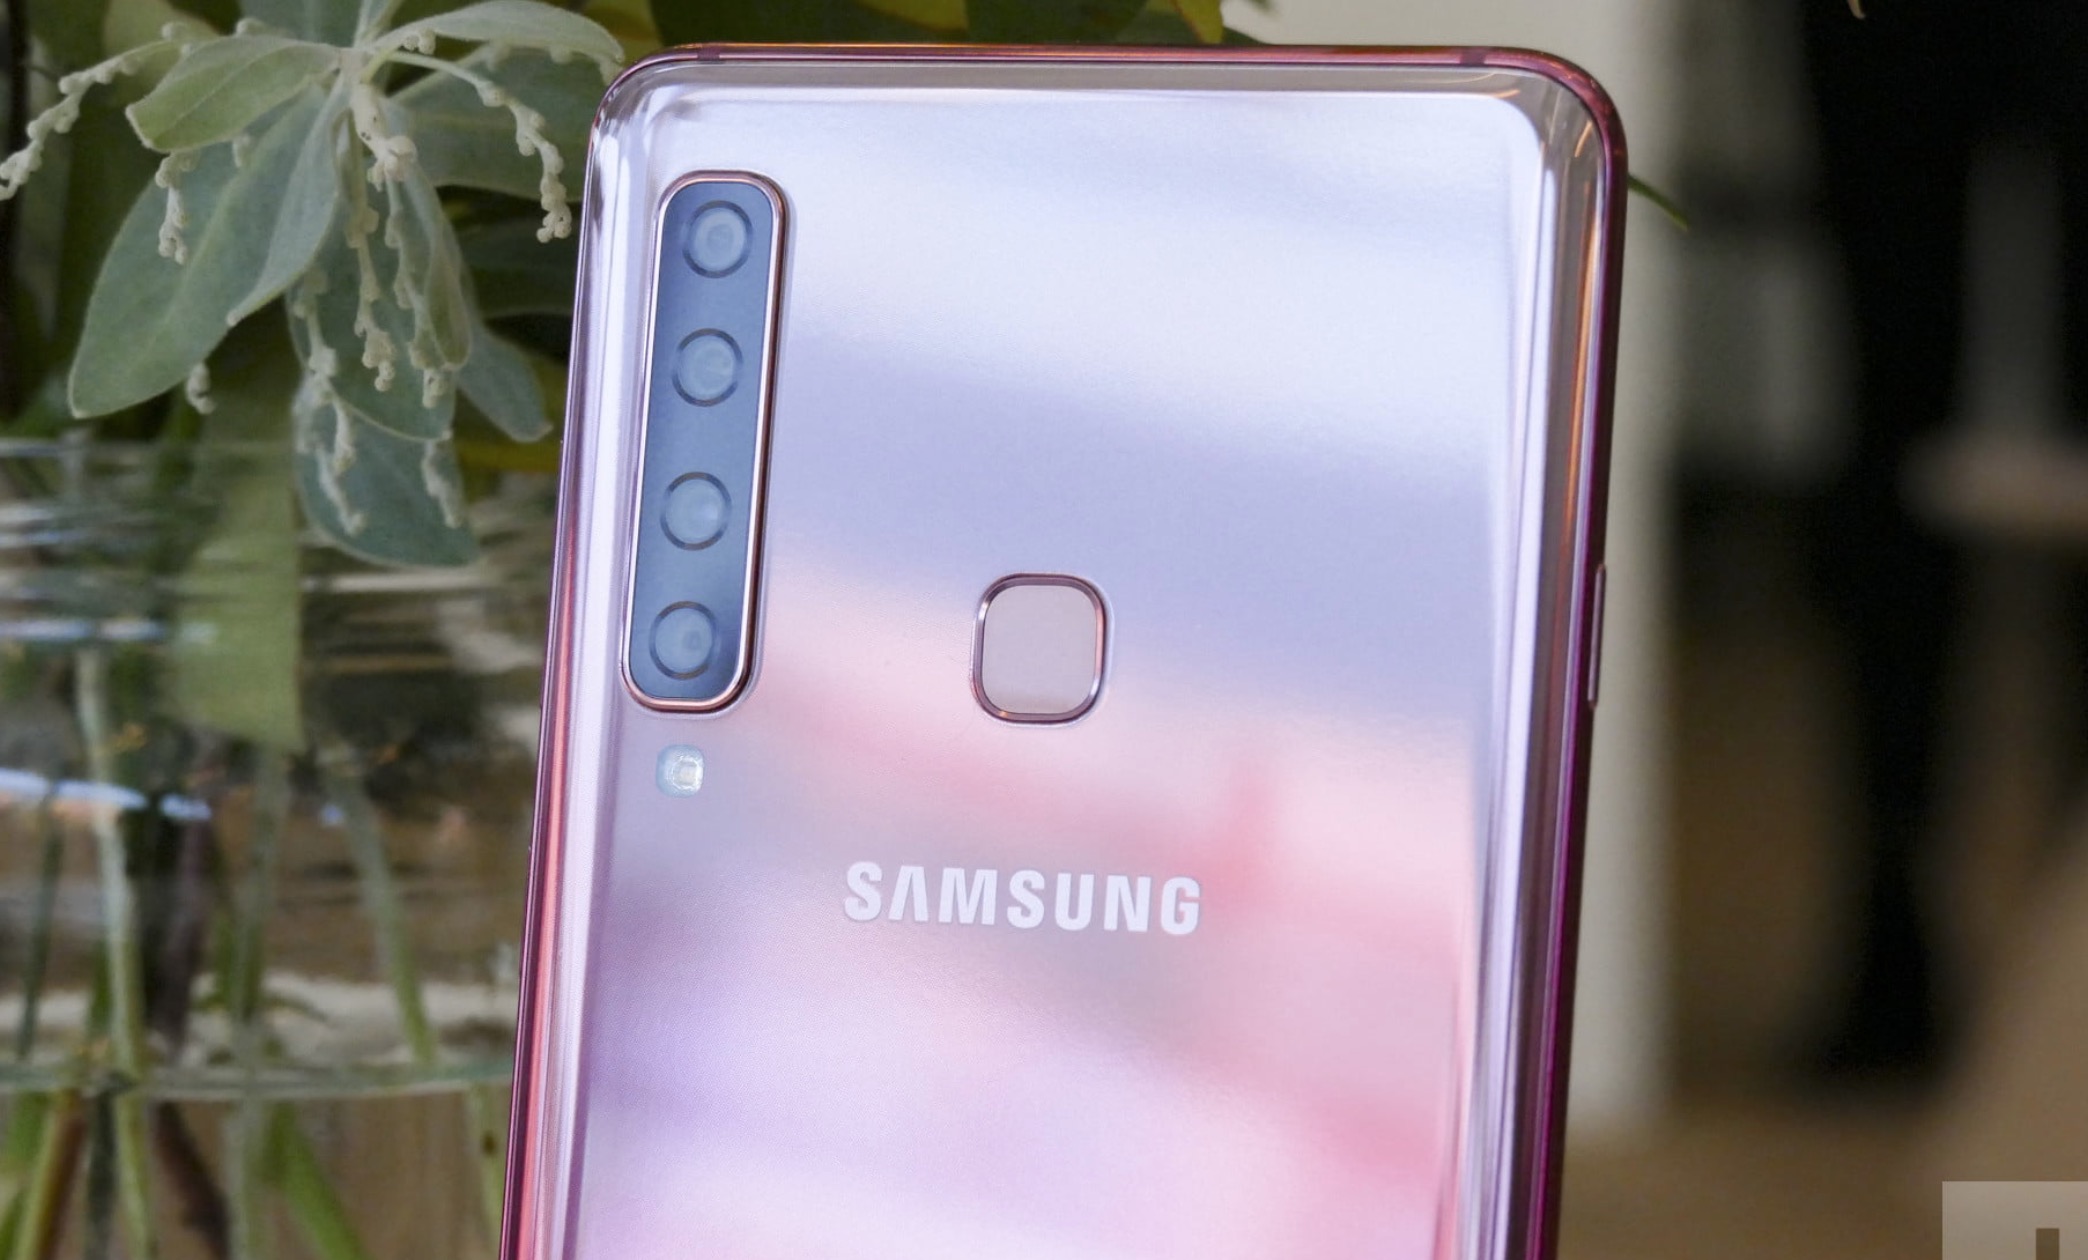 Samsung chính thức ra mắt Galaxy A9 (2018) với 4 camera sau, Snapdragon 660, 6/8GB RAM, pin 3800mAh